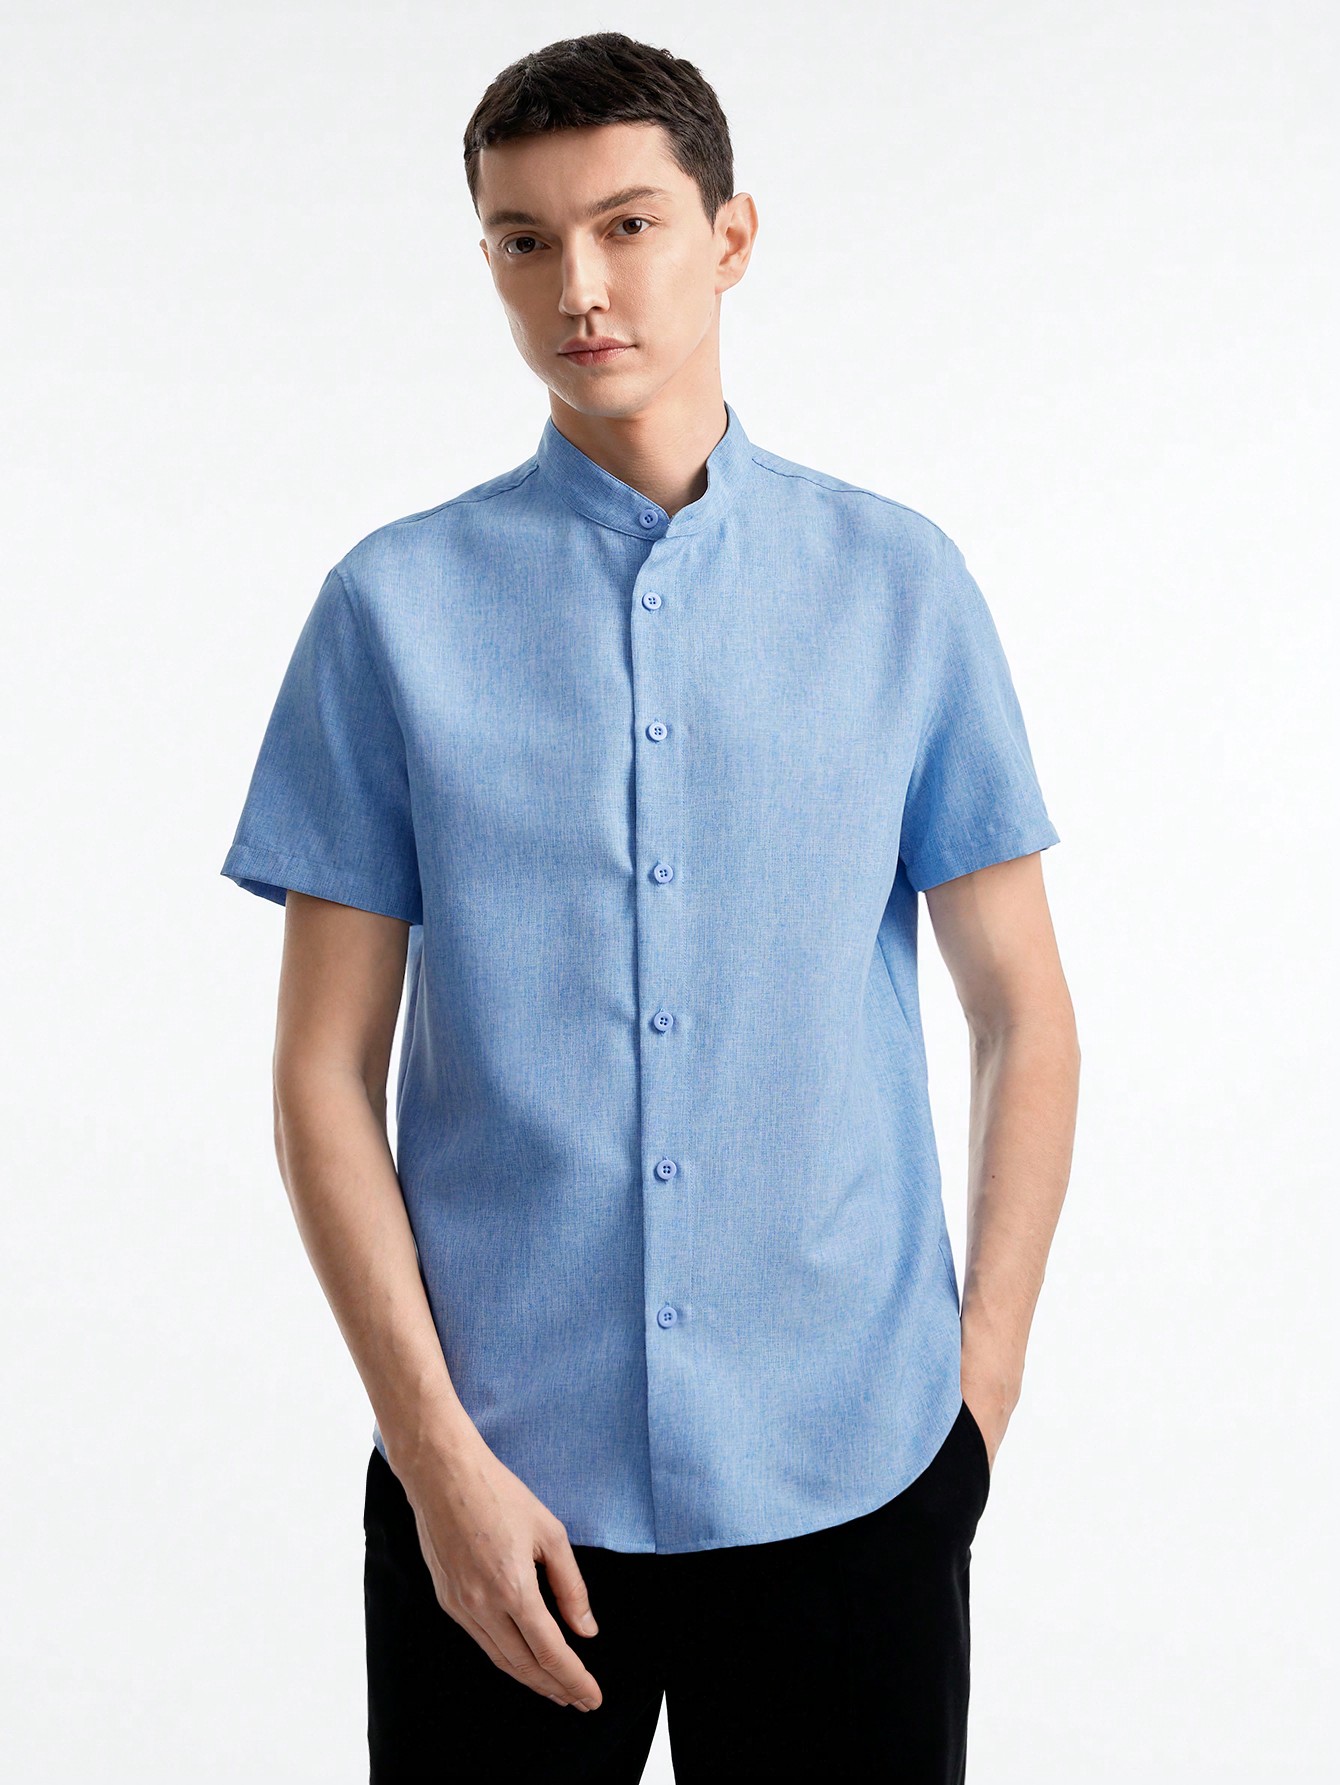 цена Мужская тканая рубашка с короткими рукавами Manfinity Basics, голубые